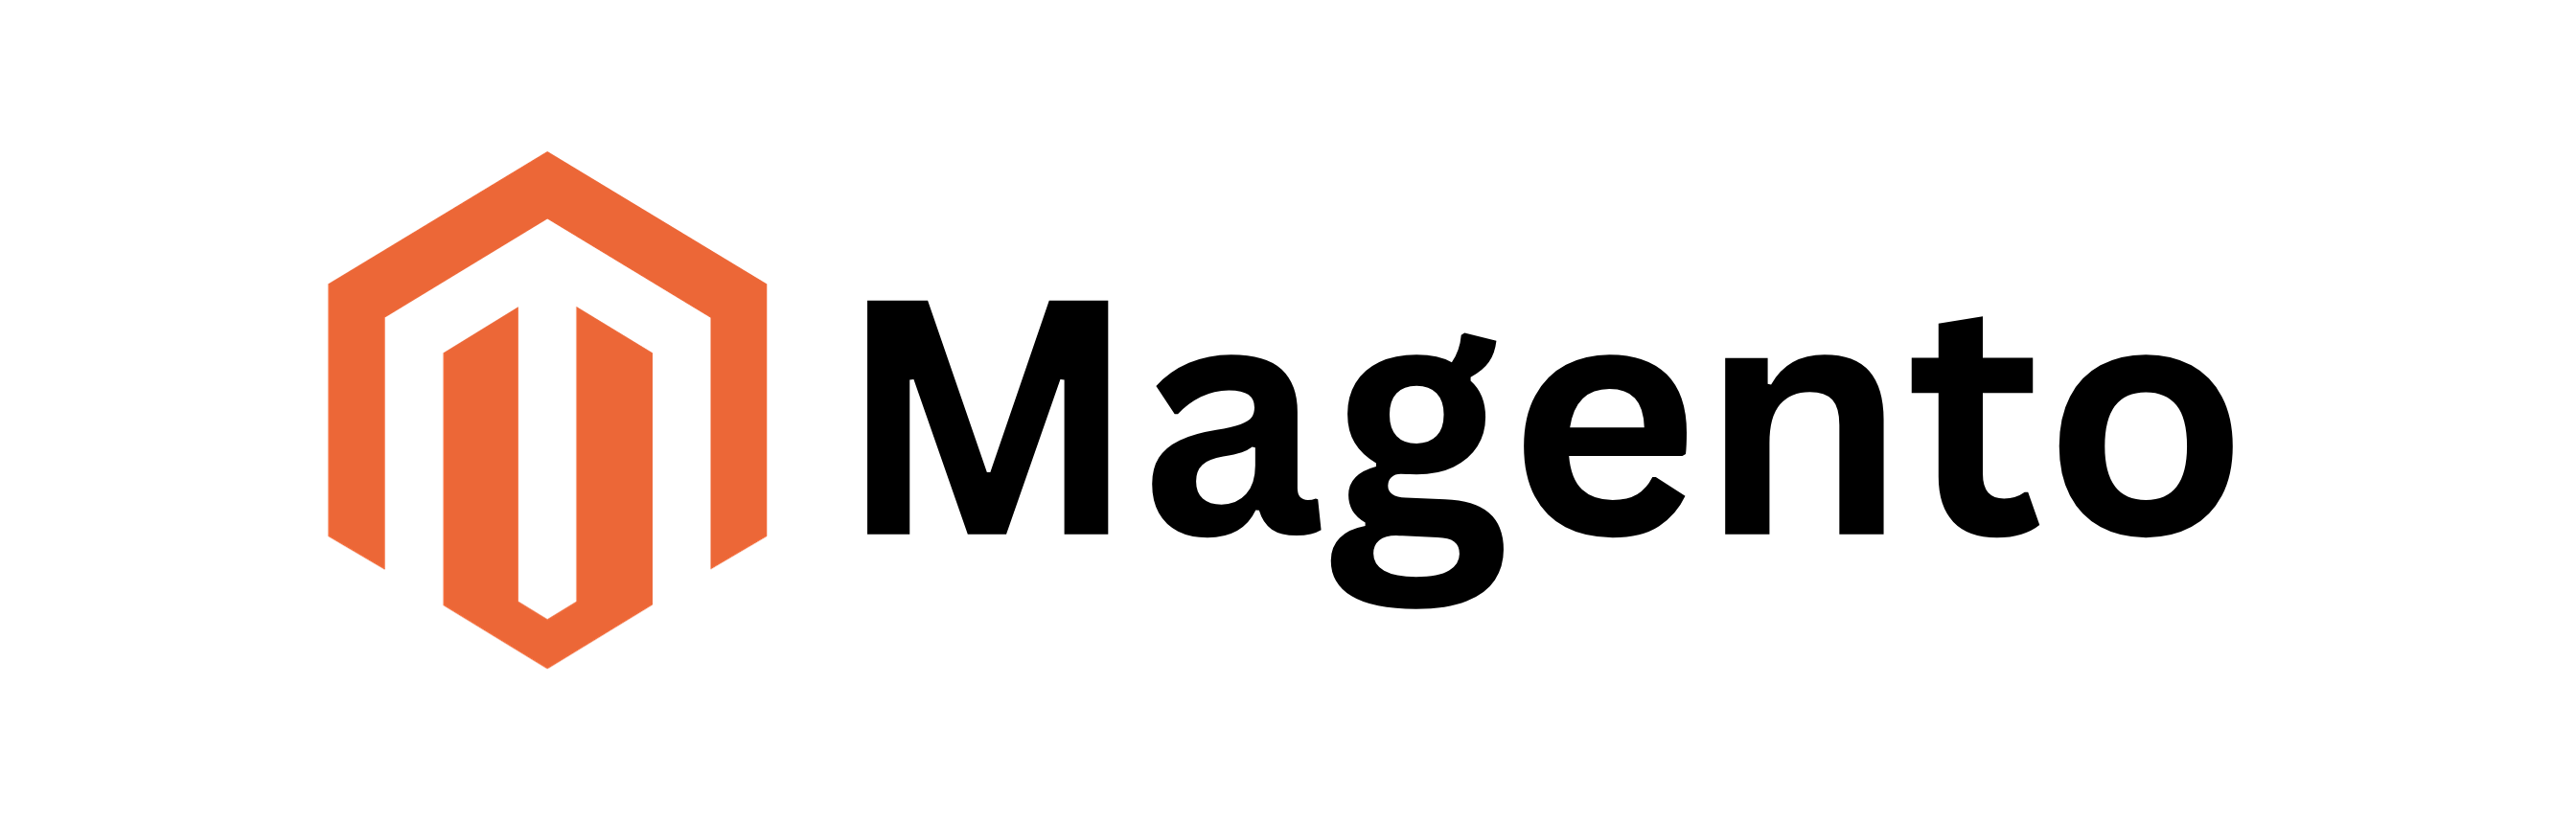 Magento Logo 